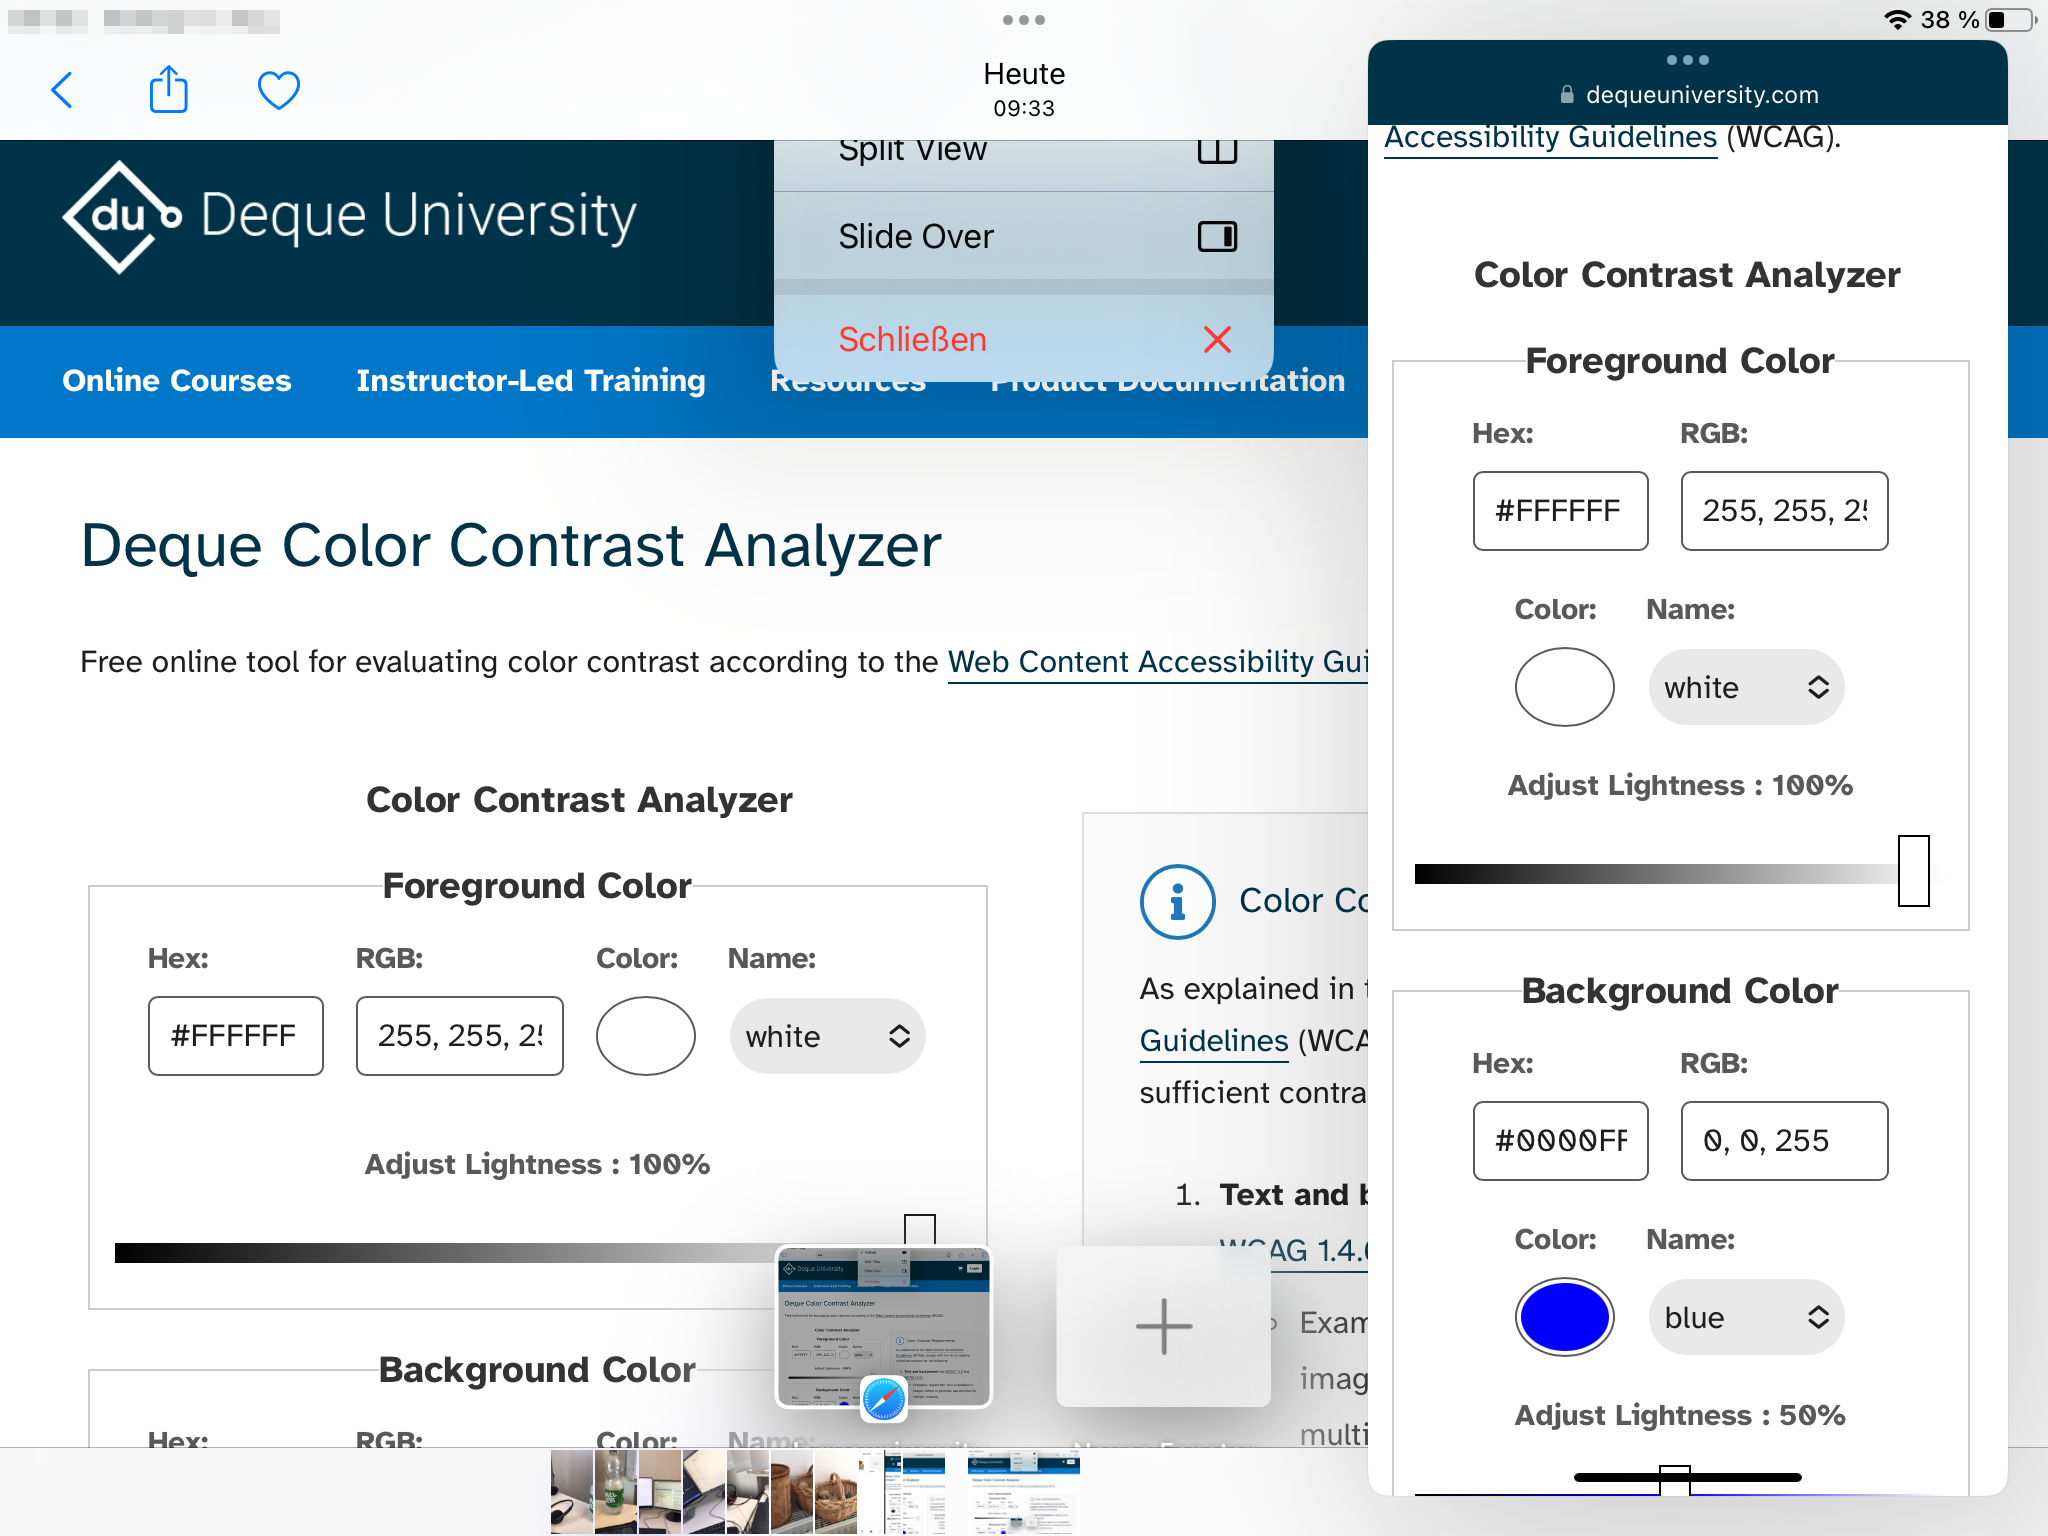 Bildschirmausschnitt vom iPad. An der rechten Seite ist der Color Contrast Analyser im Safari Browser geöffnet.